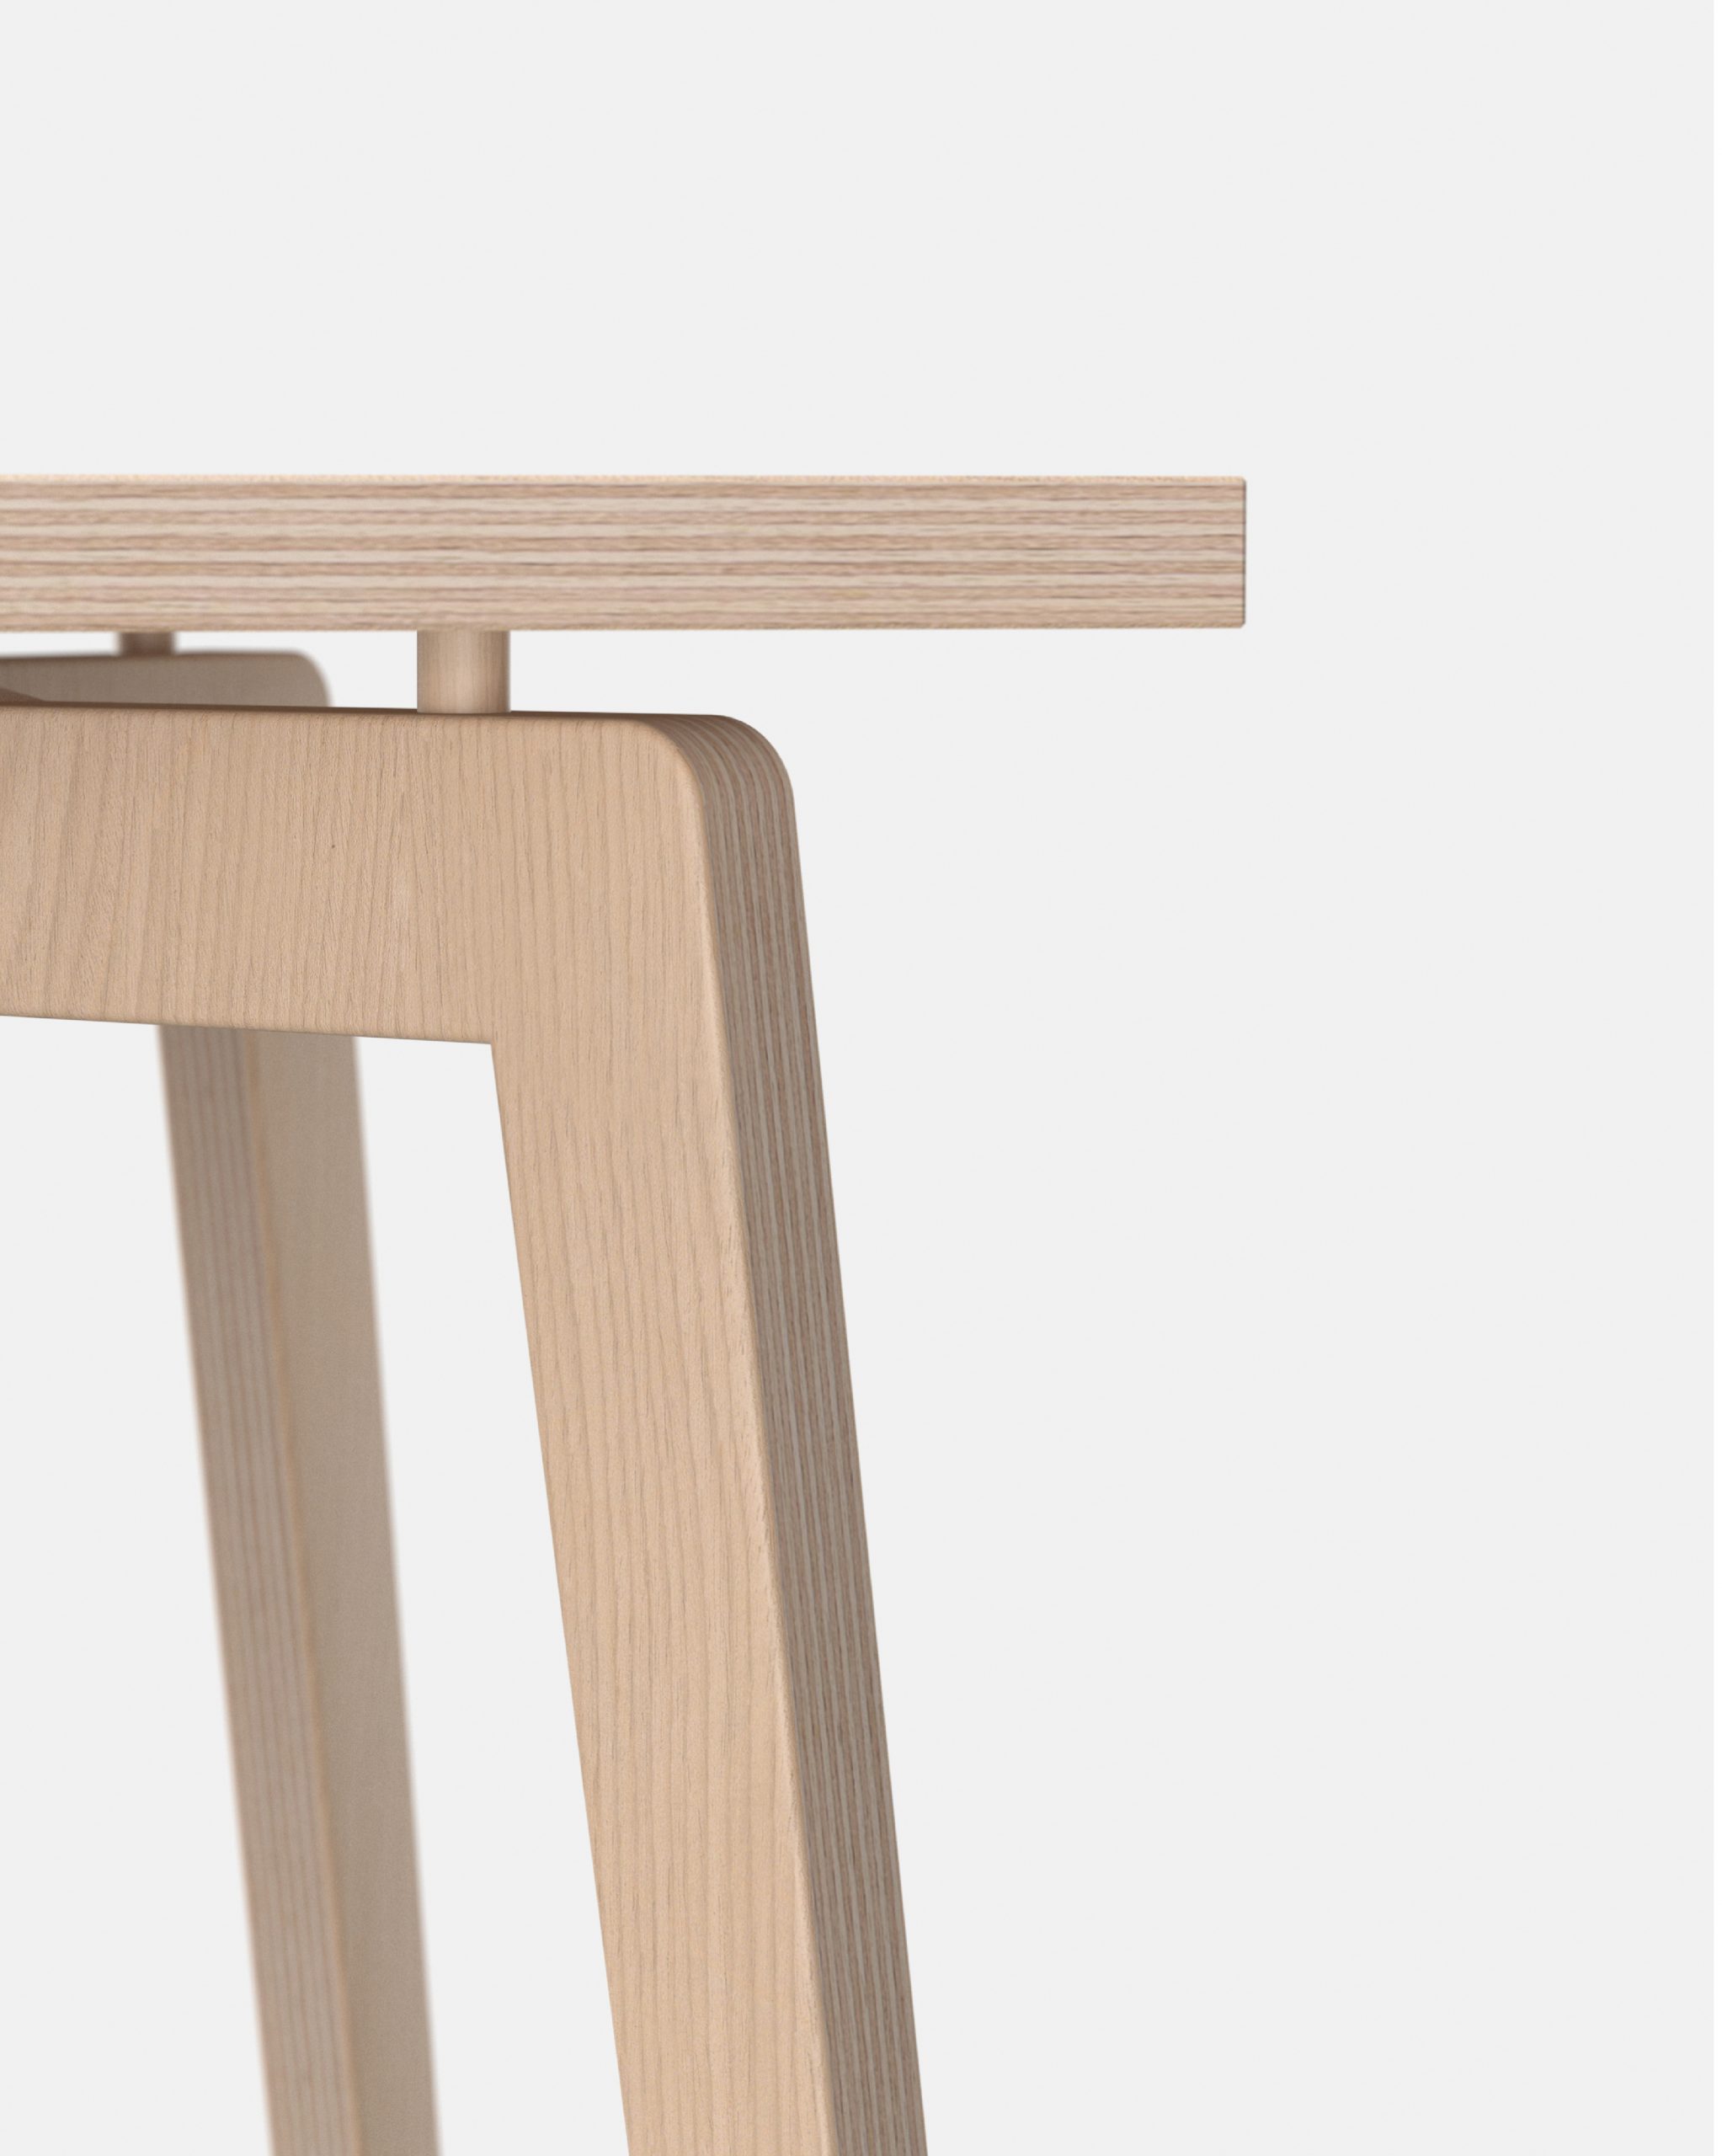 Détail table et bureau en bois français